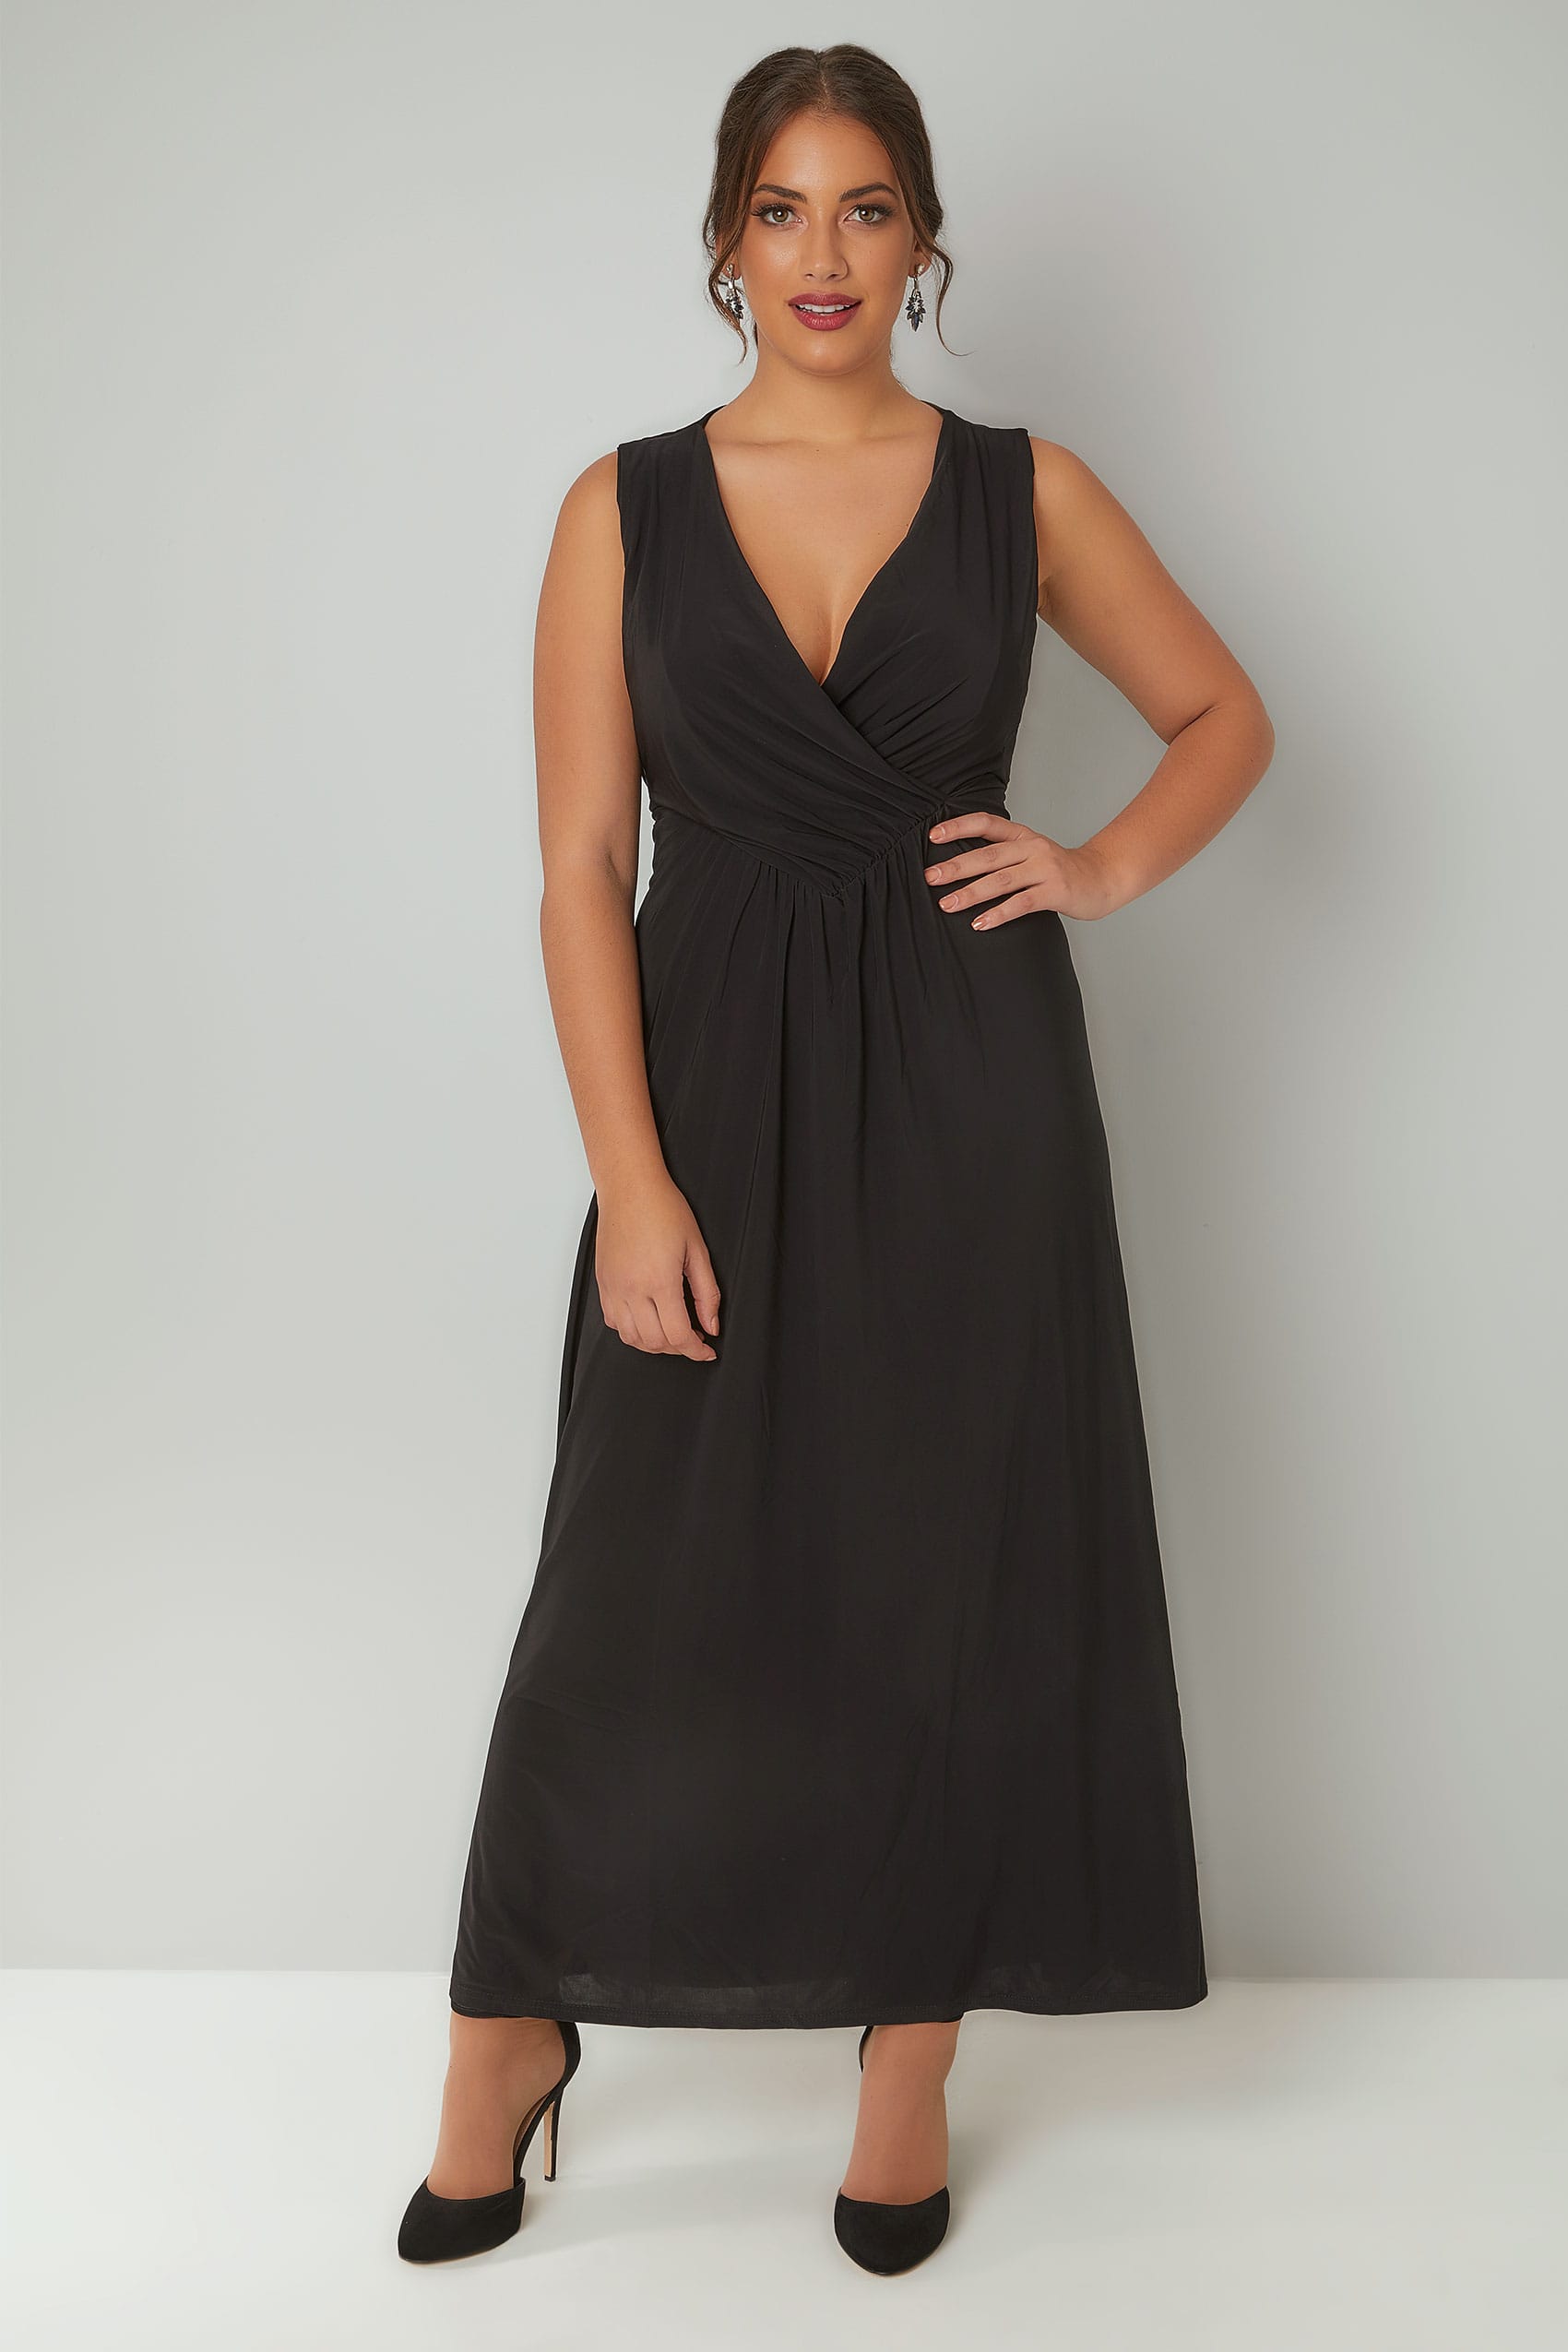 PRASLIN Black Slinky Wrap Front Maxi Dress, Plus size 16 to 26